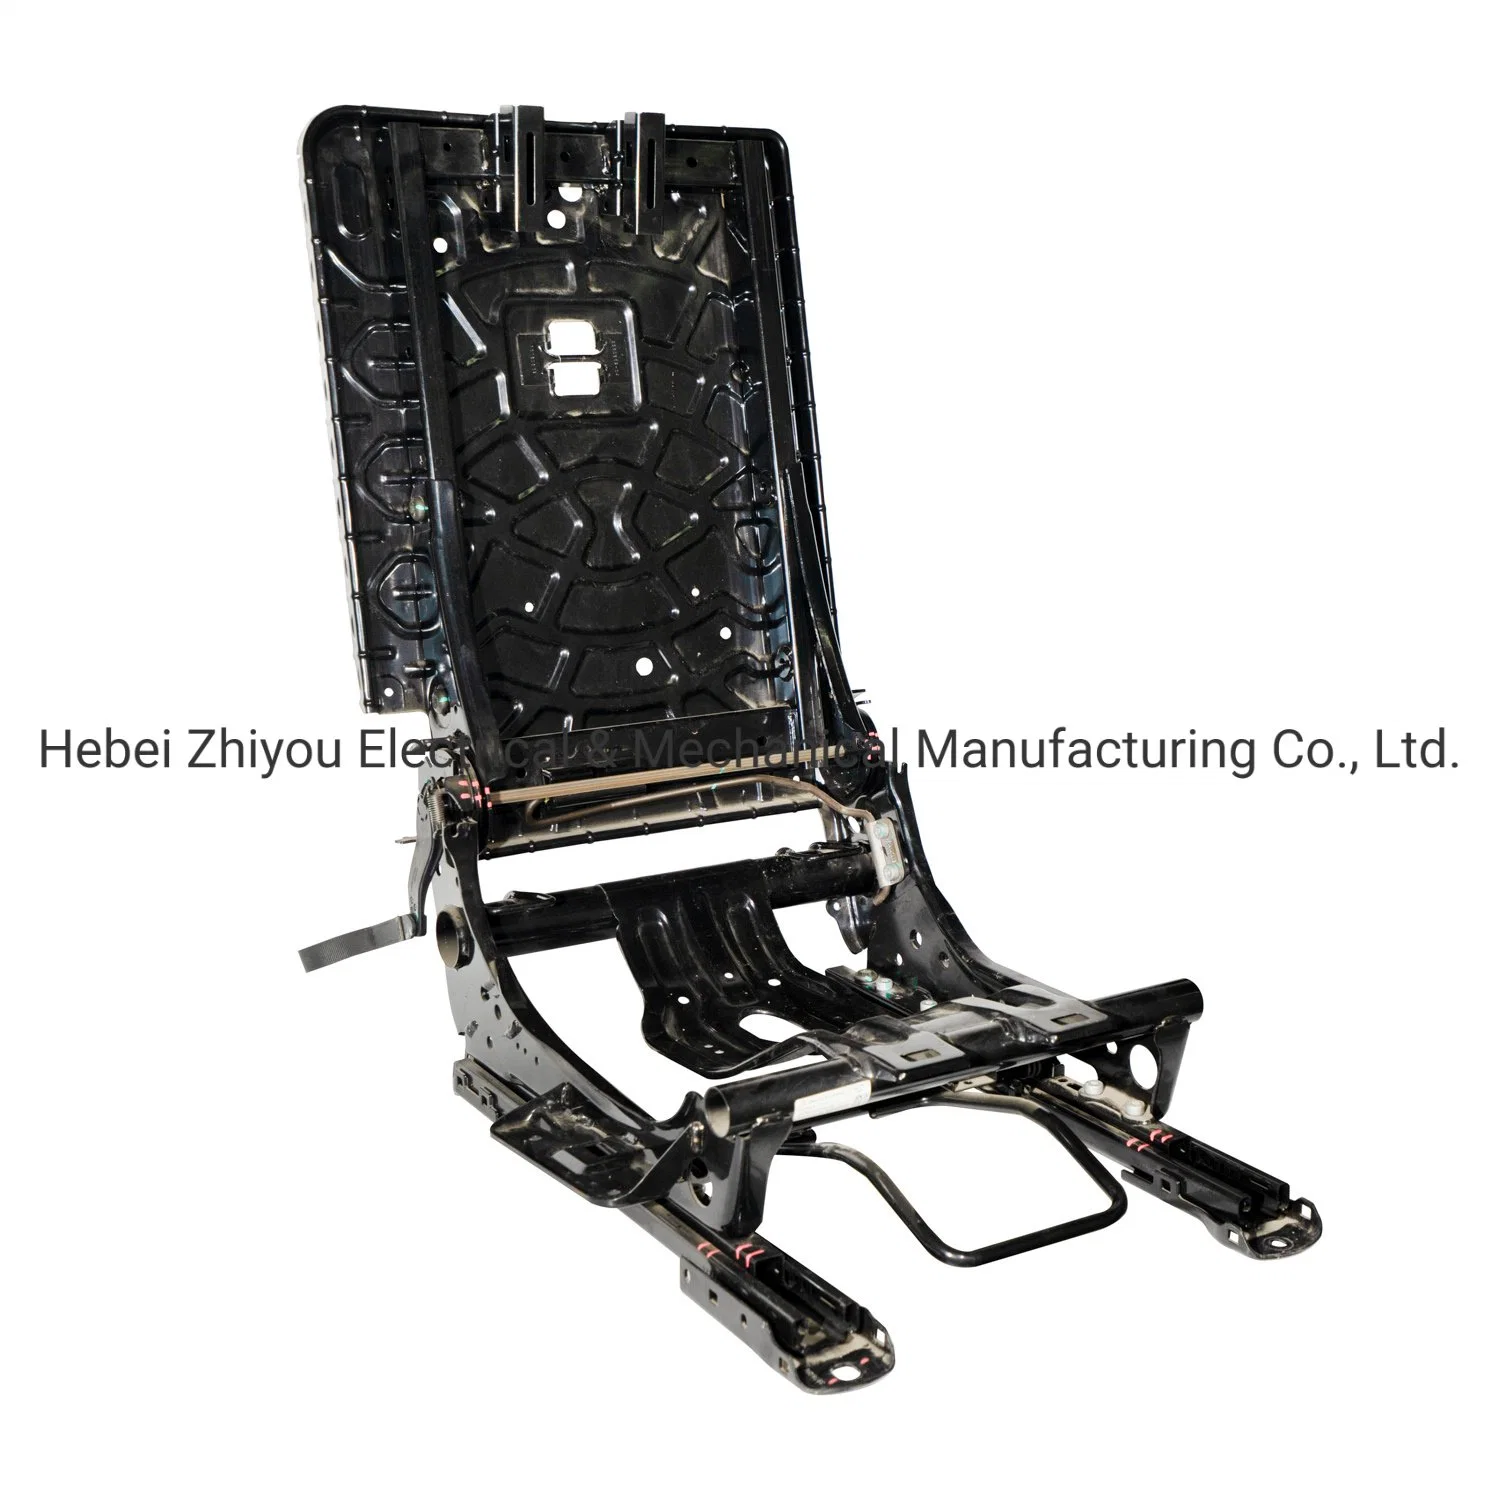 Automotive Sheet Metal Part Stamping Part Stainless Steel Metal Part Seat Frame Stamping Part